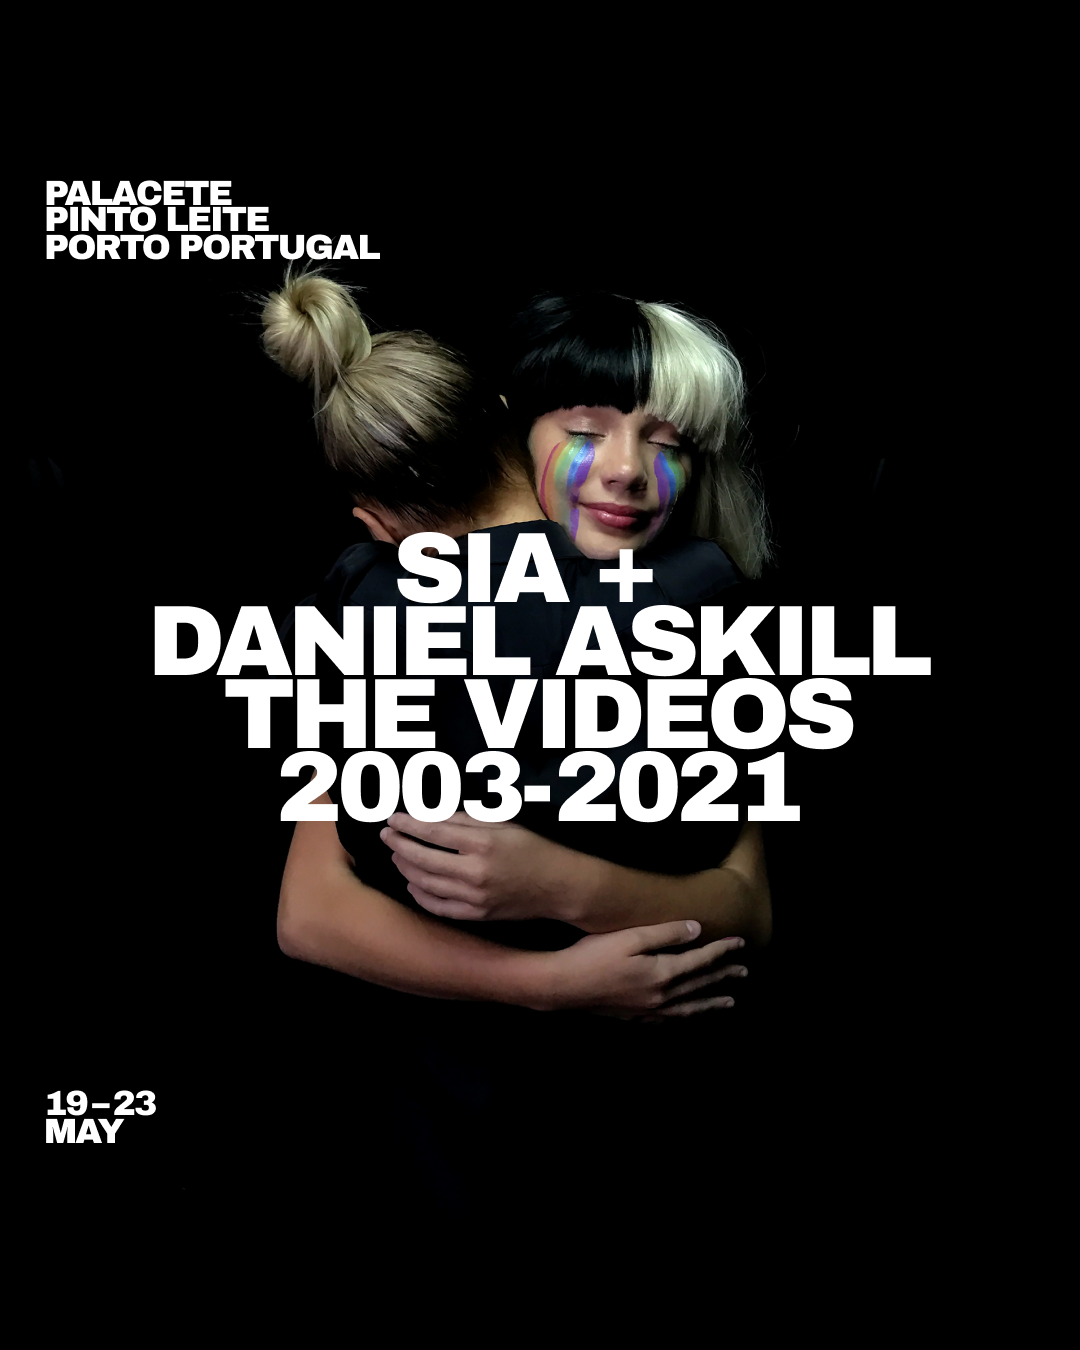 Sia + Daniel Askill The Videos 2003 - 2021 - Evento